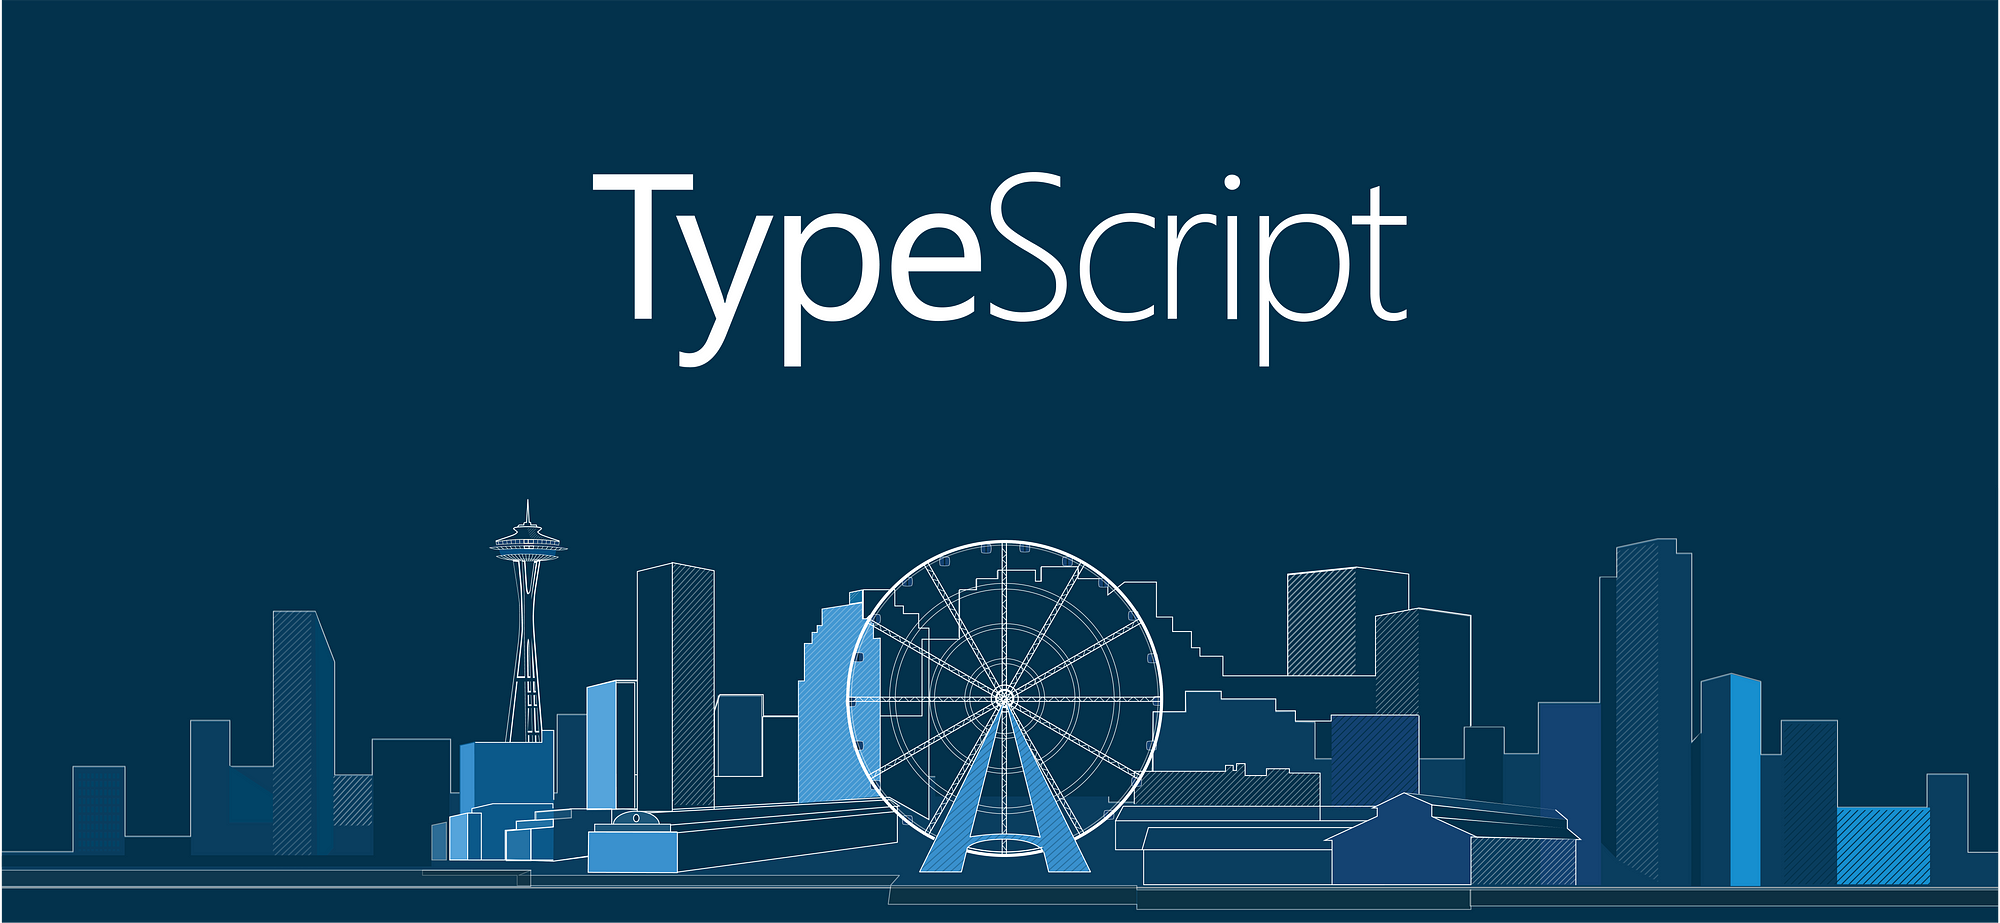 Typescript
